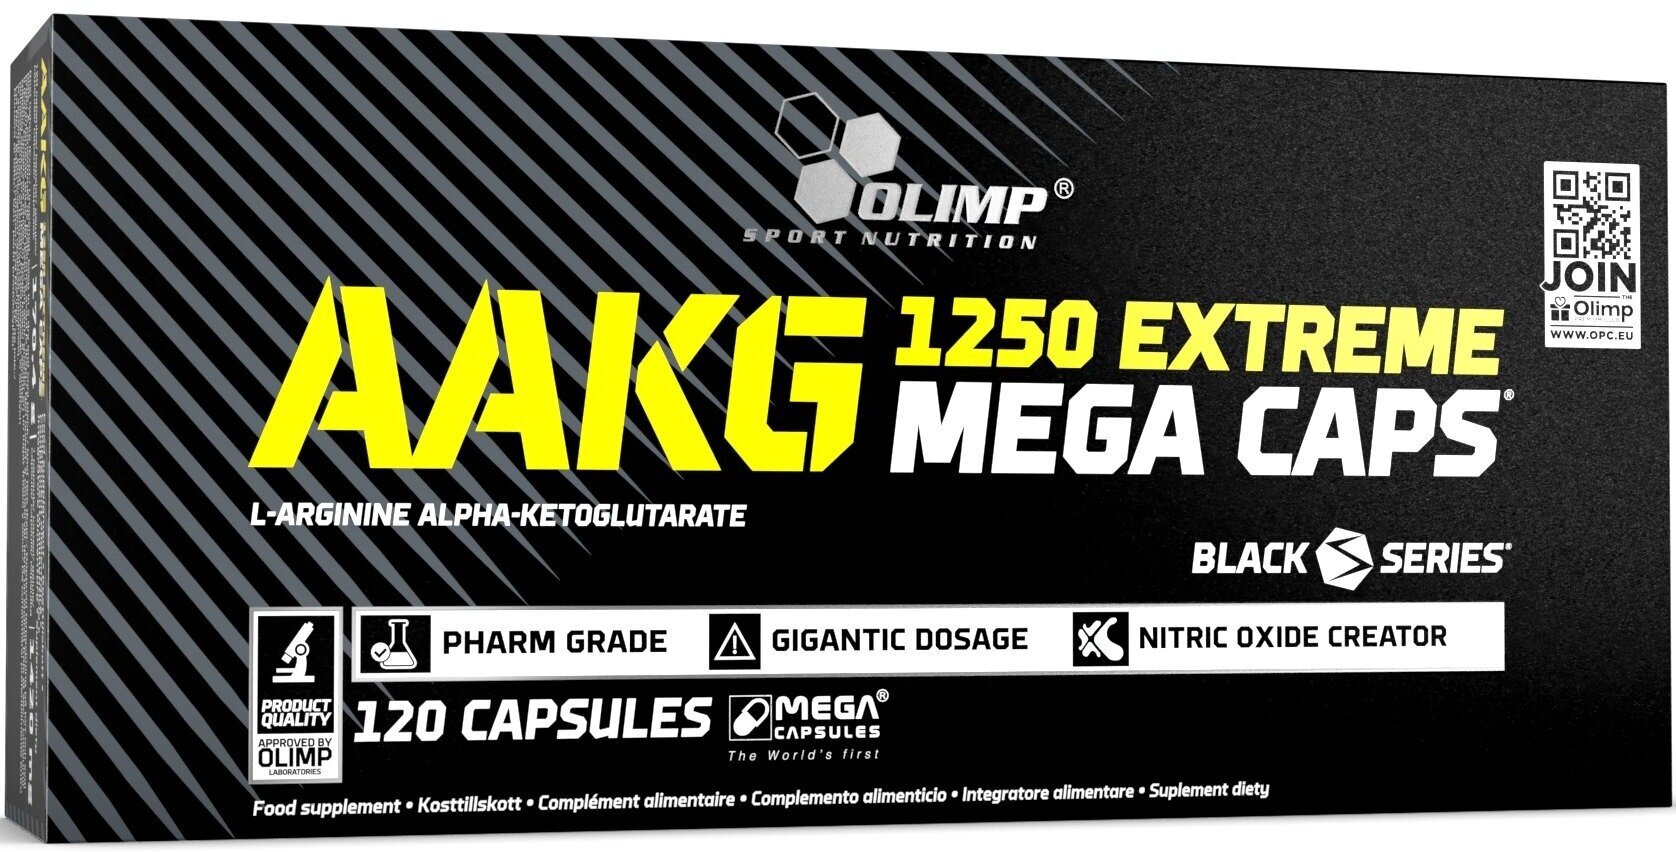 AAKG OLIMP AAKG 1250 EXTREME MEGA CAPS 120 капсул, Нейтральный